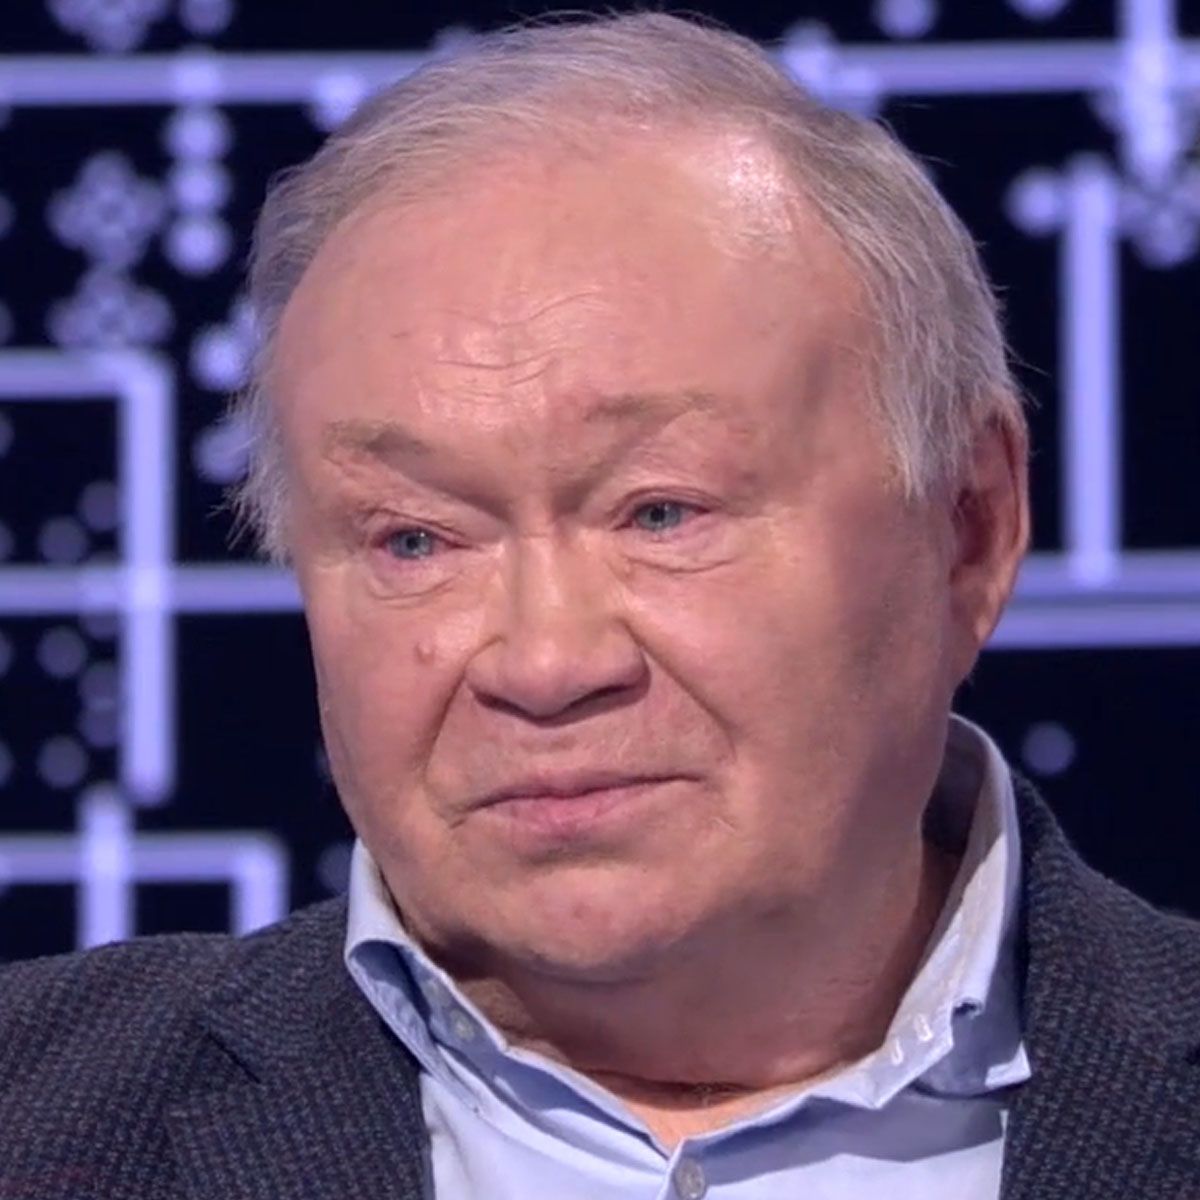 Звезда сериала «Улицы разбитых фонарей» Юрий Кузнецов рассказал, какую  пенсию получает - Вокруг ТВ.